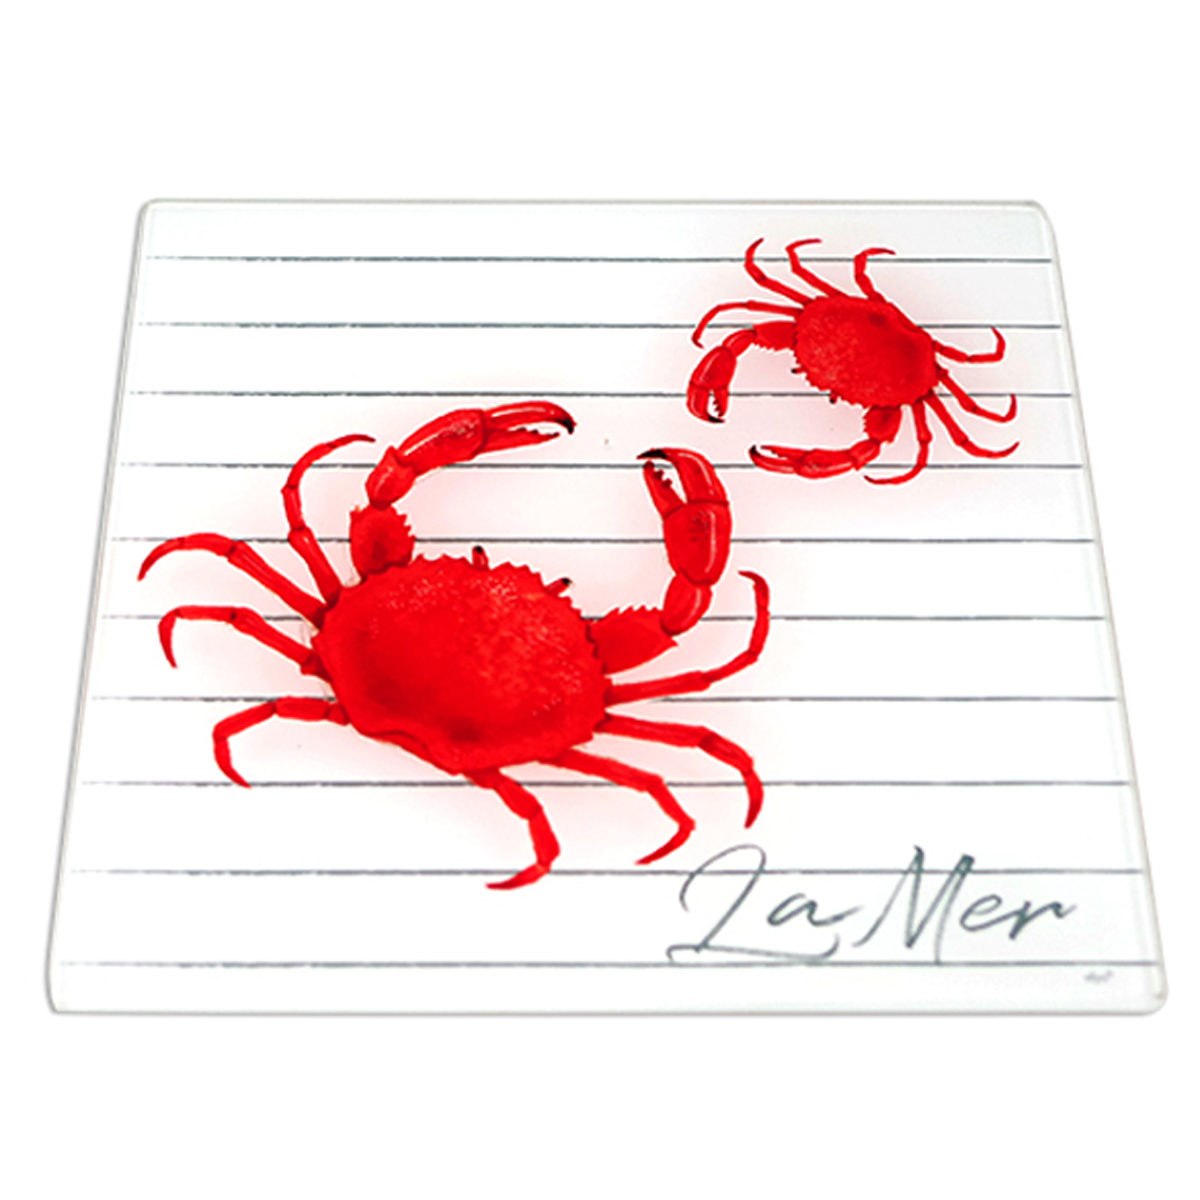 Dessous de plat verre \'La Mer\' rouge blanc - 20x20 cm (crabe) - [R6536]